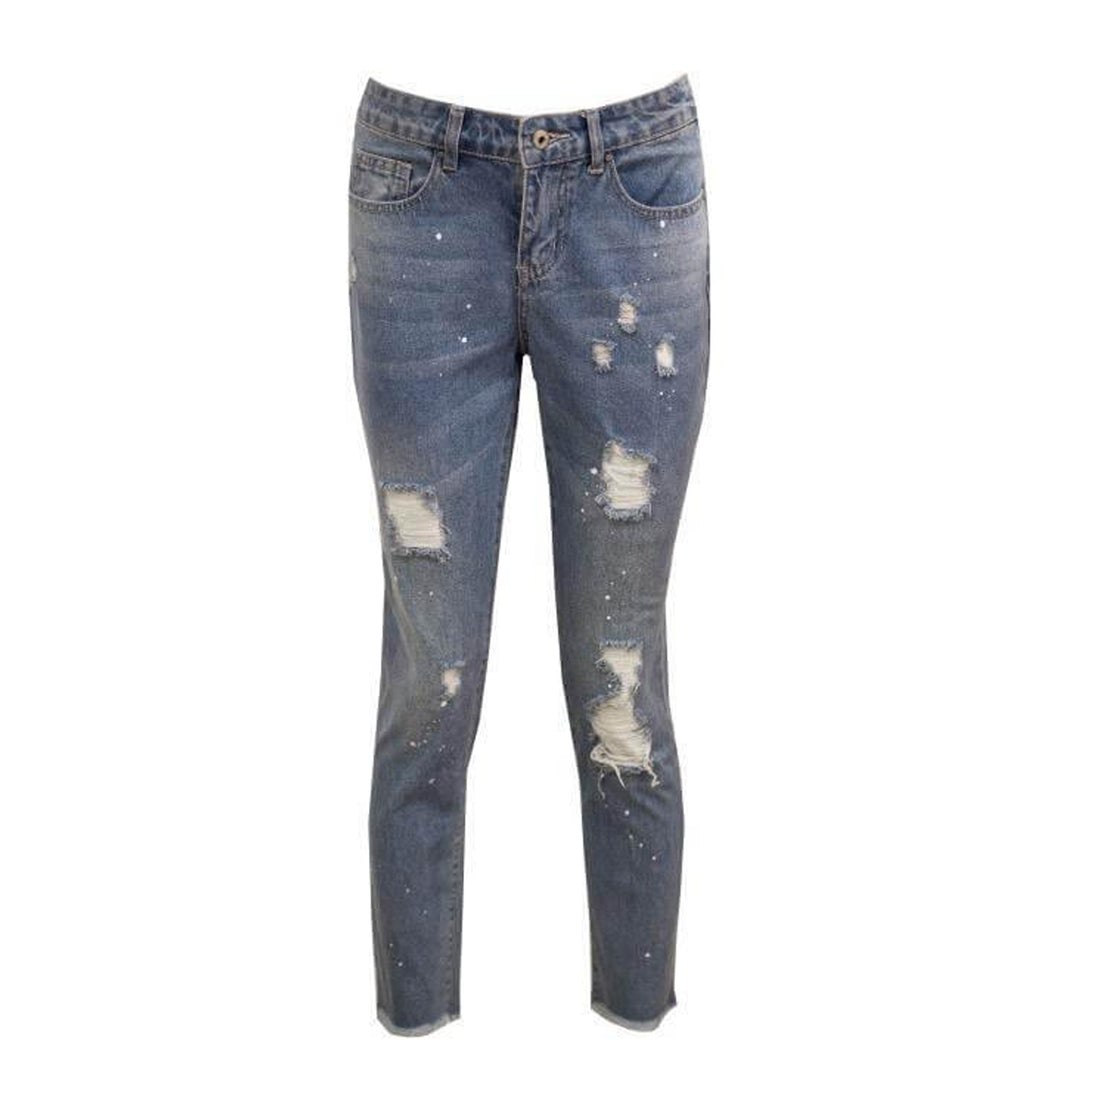 Boyfriend jeans blauw semi oversized en met gekartelde pijpen. De broek valt klein, bij twijfel een maatje groter pakken. Materiaal van de jeans is:  100% cotton 